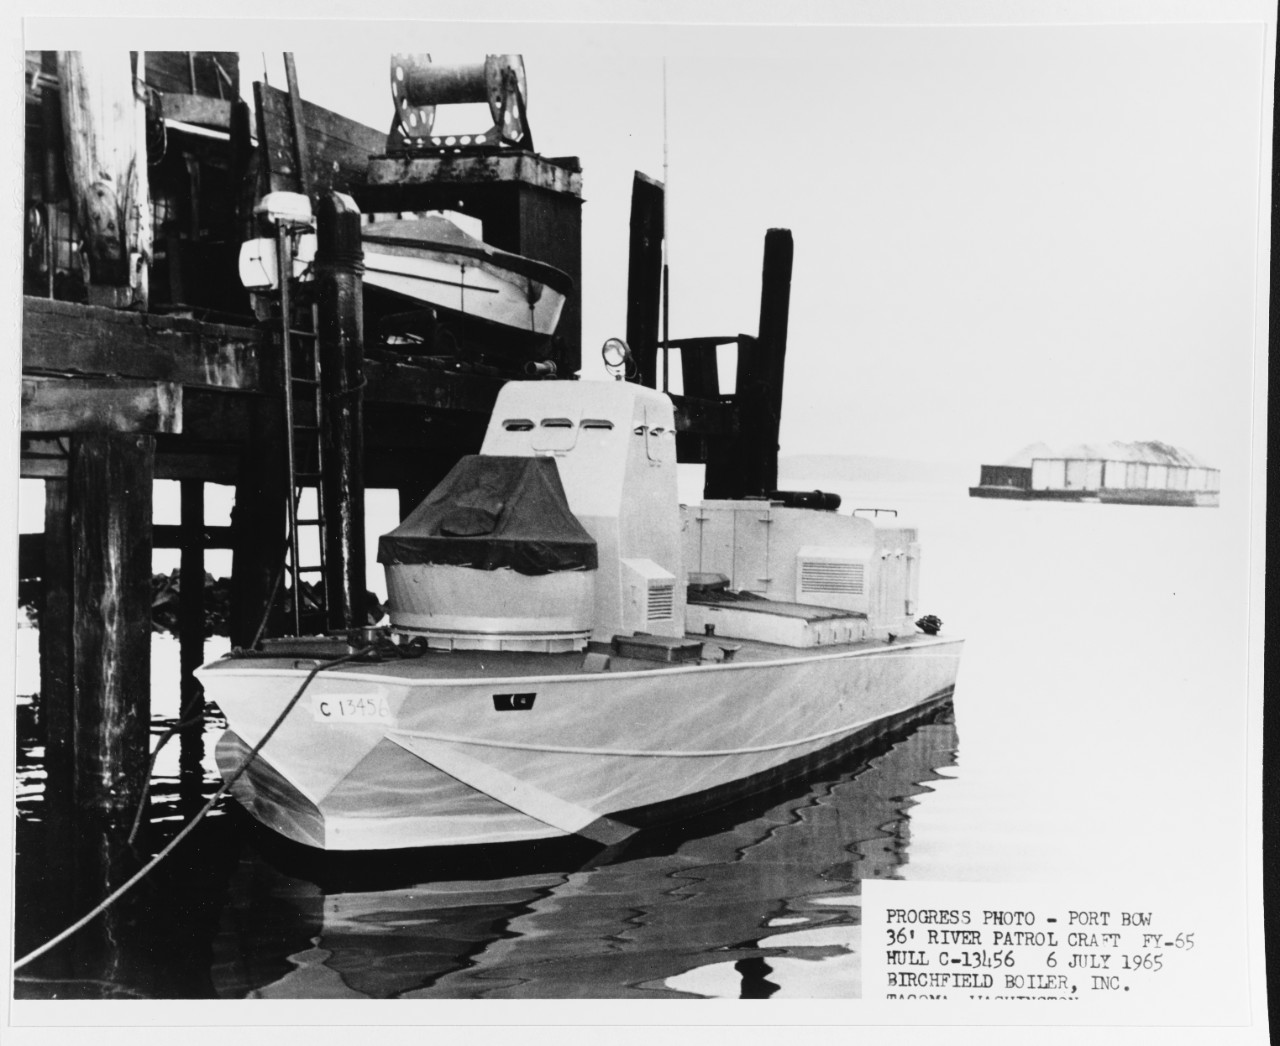 36-foot river patrol craft (RPC) (Boat # C-13456)